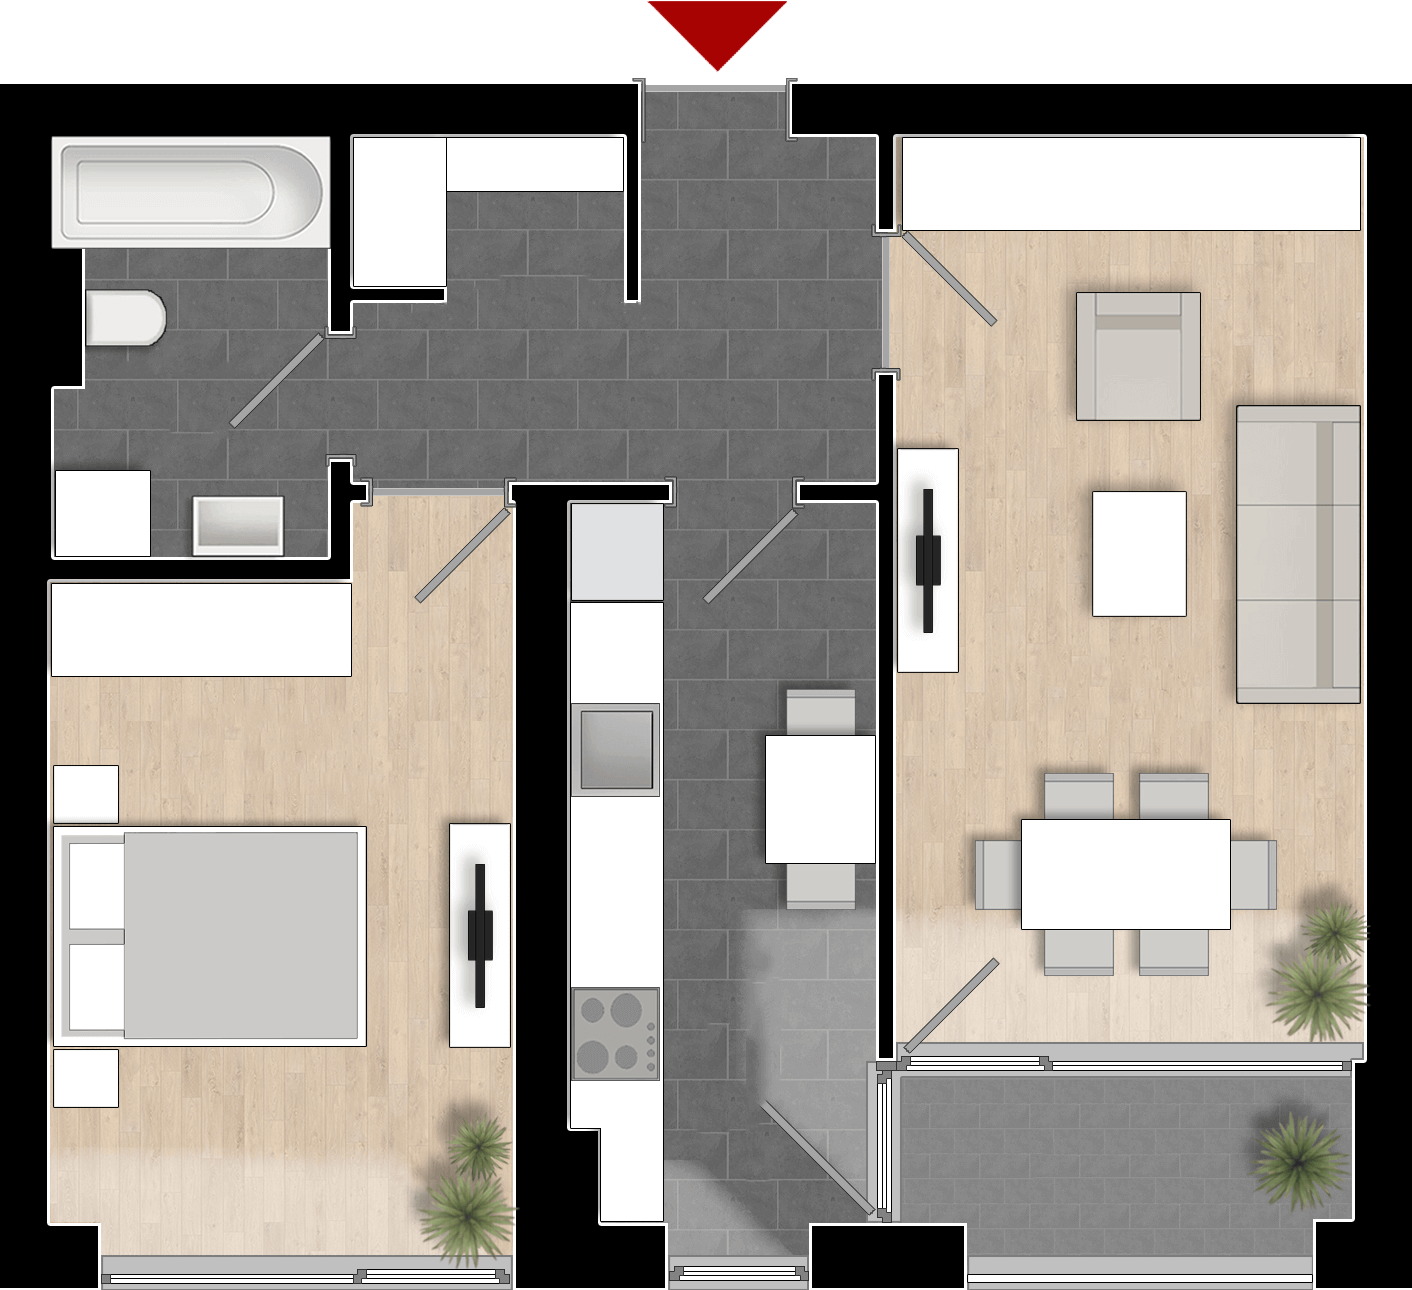  Apartament 511, Tip de apartament 2A cu 2 camere 